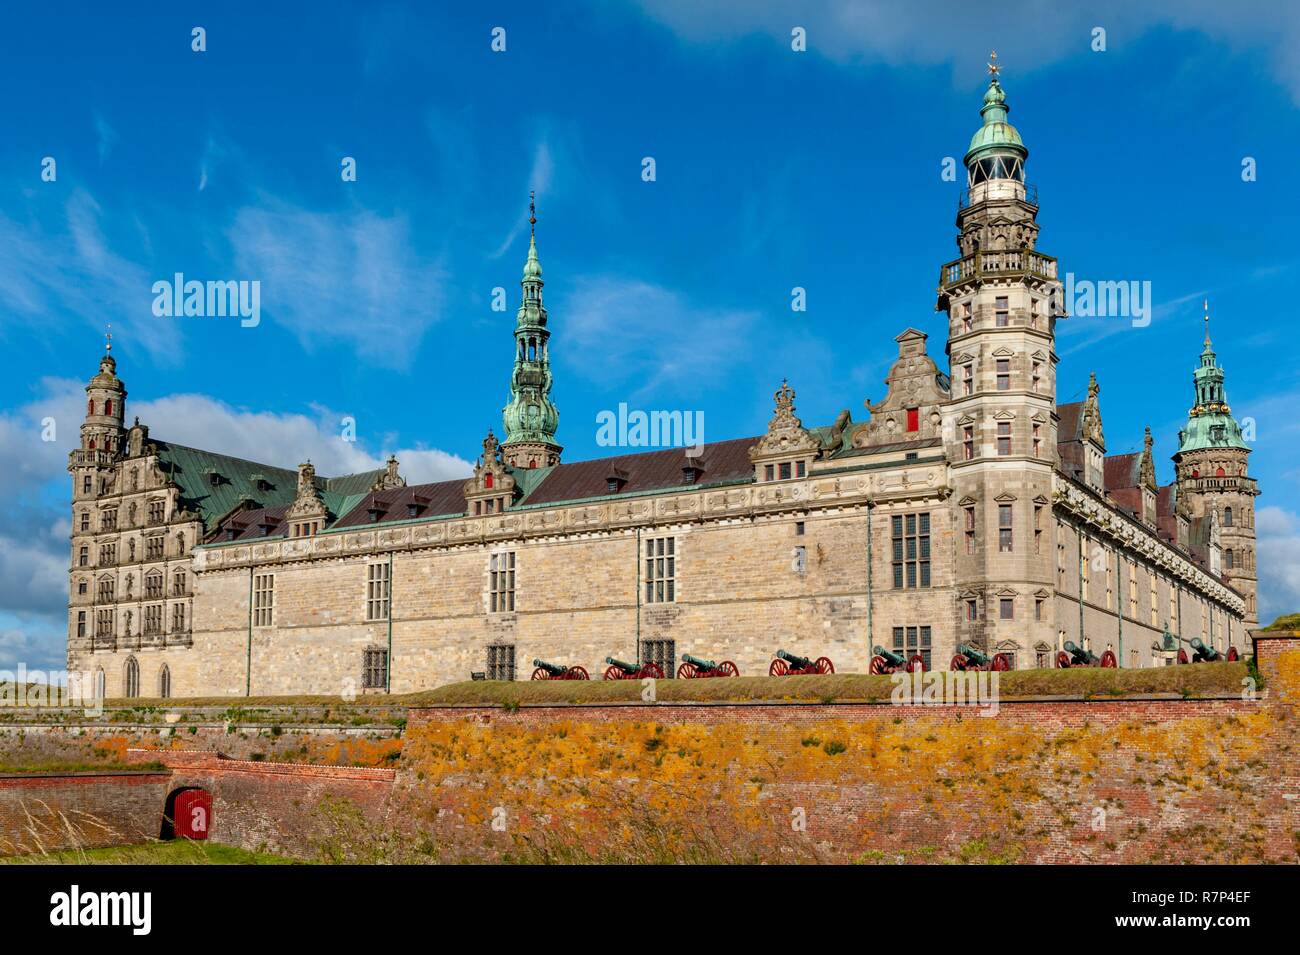 Dänemark, Insel von Dän, Helsingor, Renaissance Schloss Kronborg und seine Befestigungen, als Weltkulturerbe von der UNESCO klassifiziert, Shakespeares Hamlet Einstellung Stockfoto